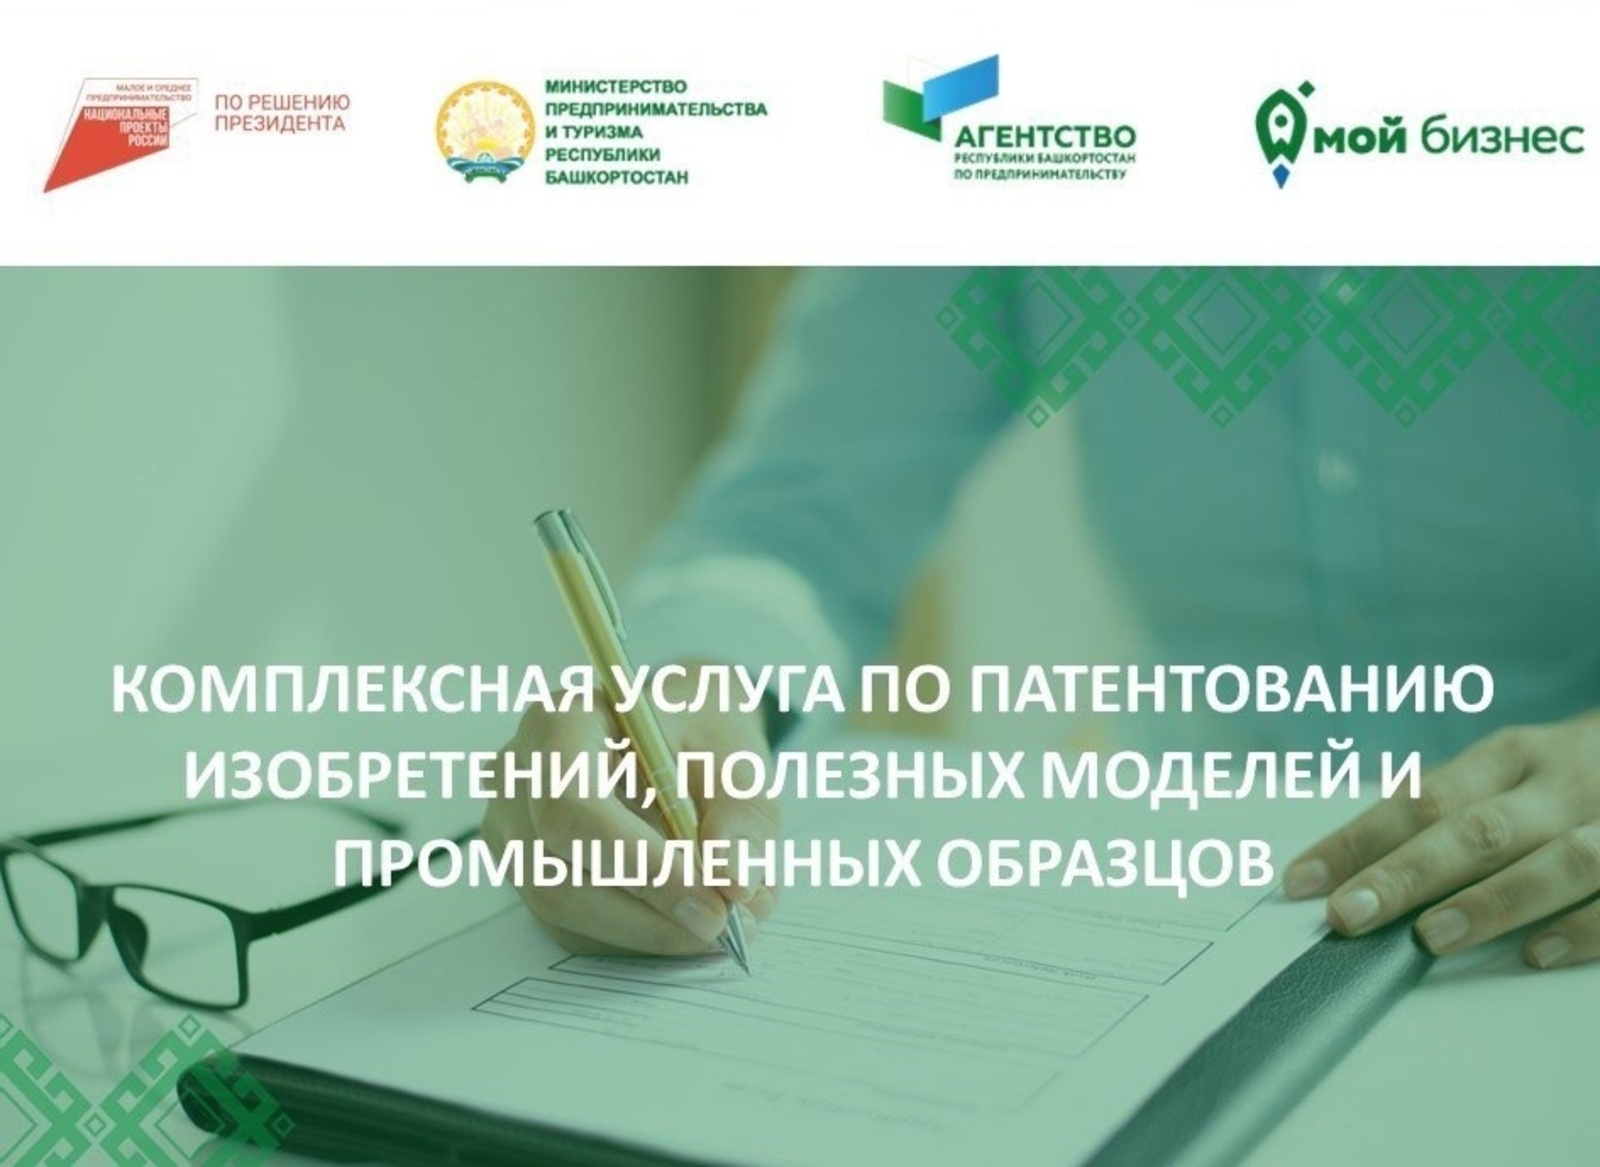 В Башкирии предпринимателям предлагают патентовать интеллектуальную деятельность